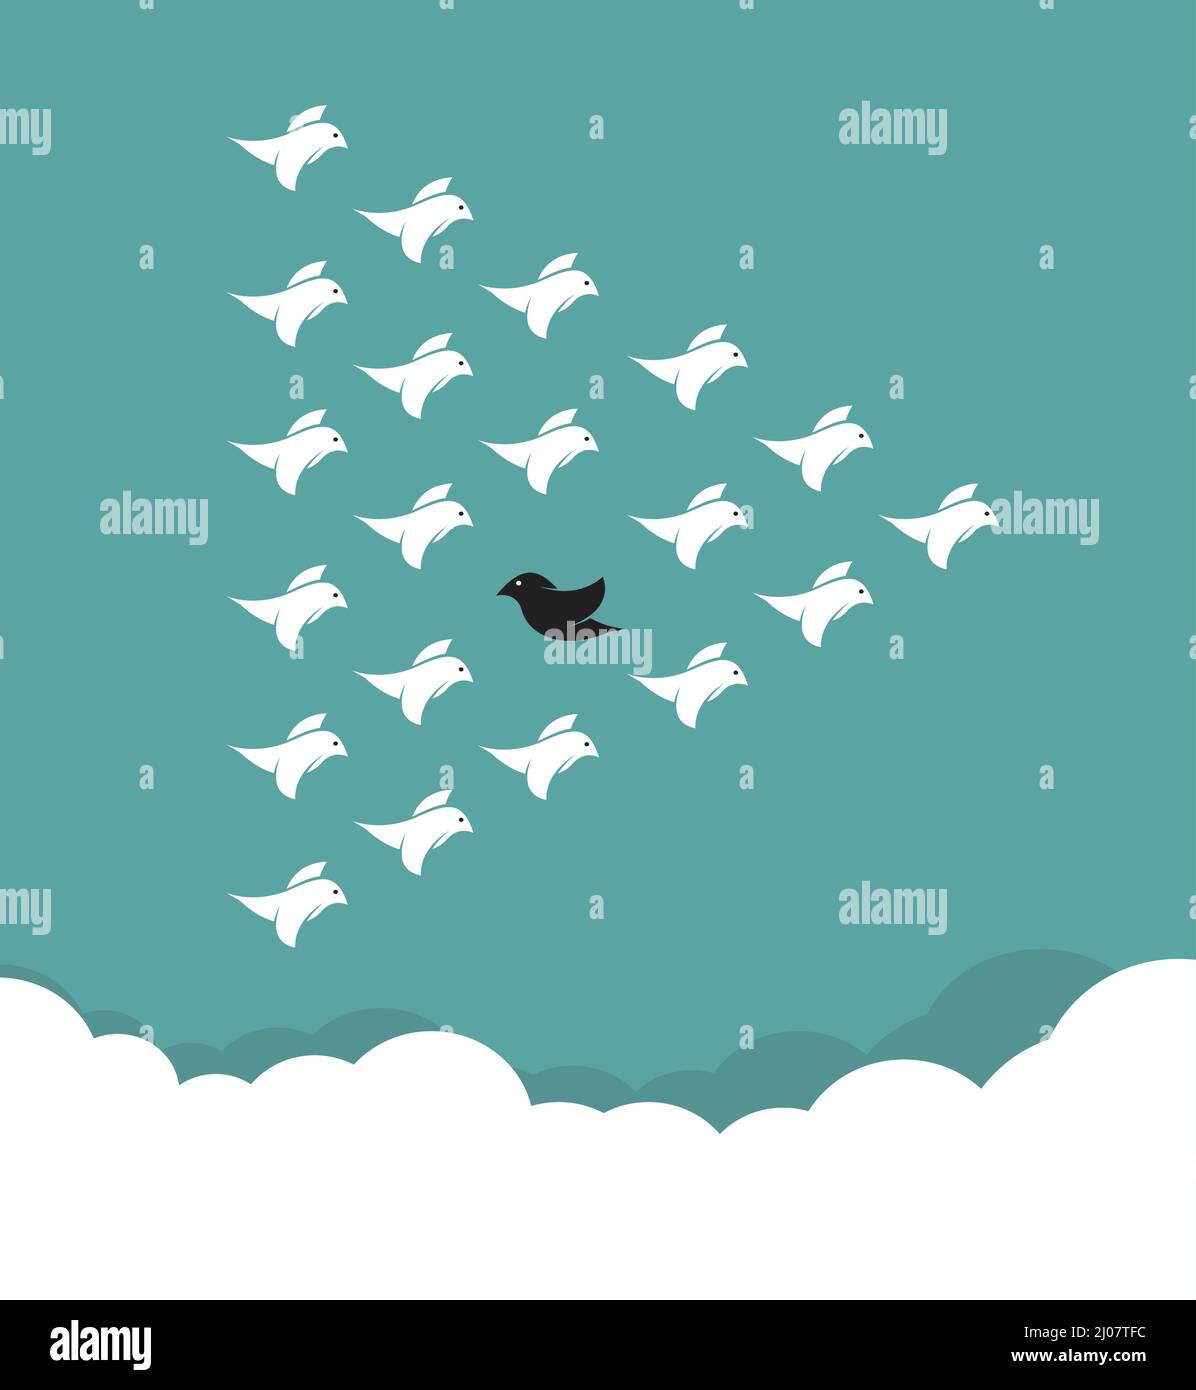 Troupeau d'oiseaux volant dans le ciel, différents concepts. Illustration vectorielle superposée facile à modifier. Illustration de Vecteur